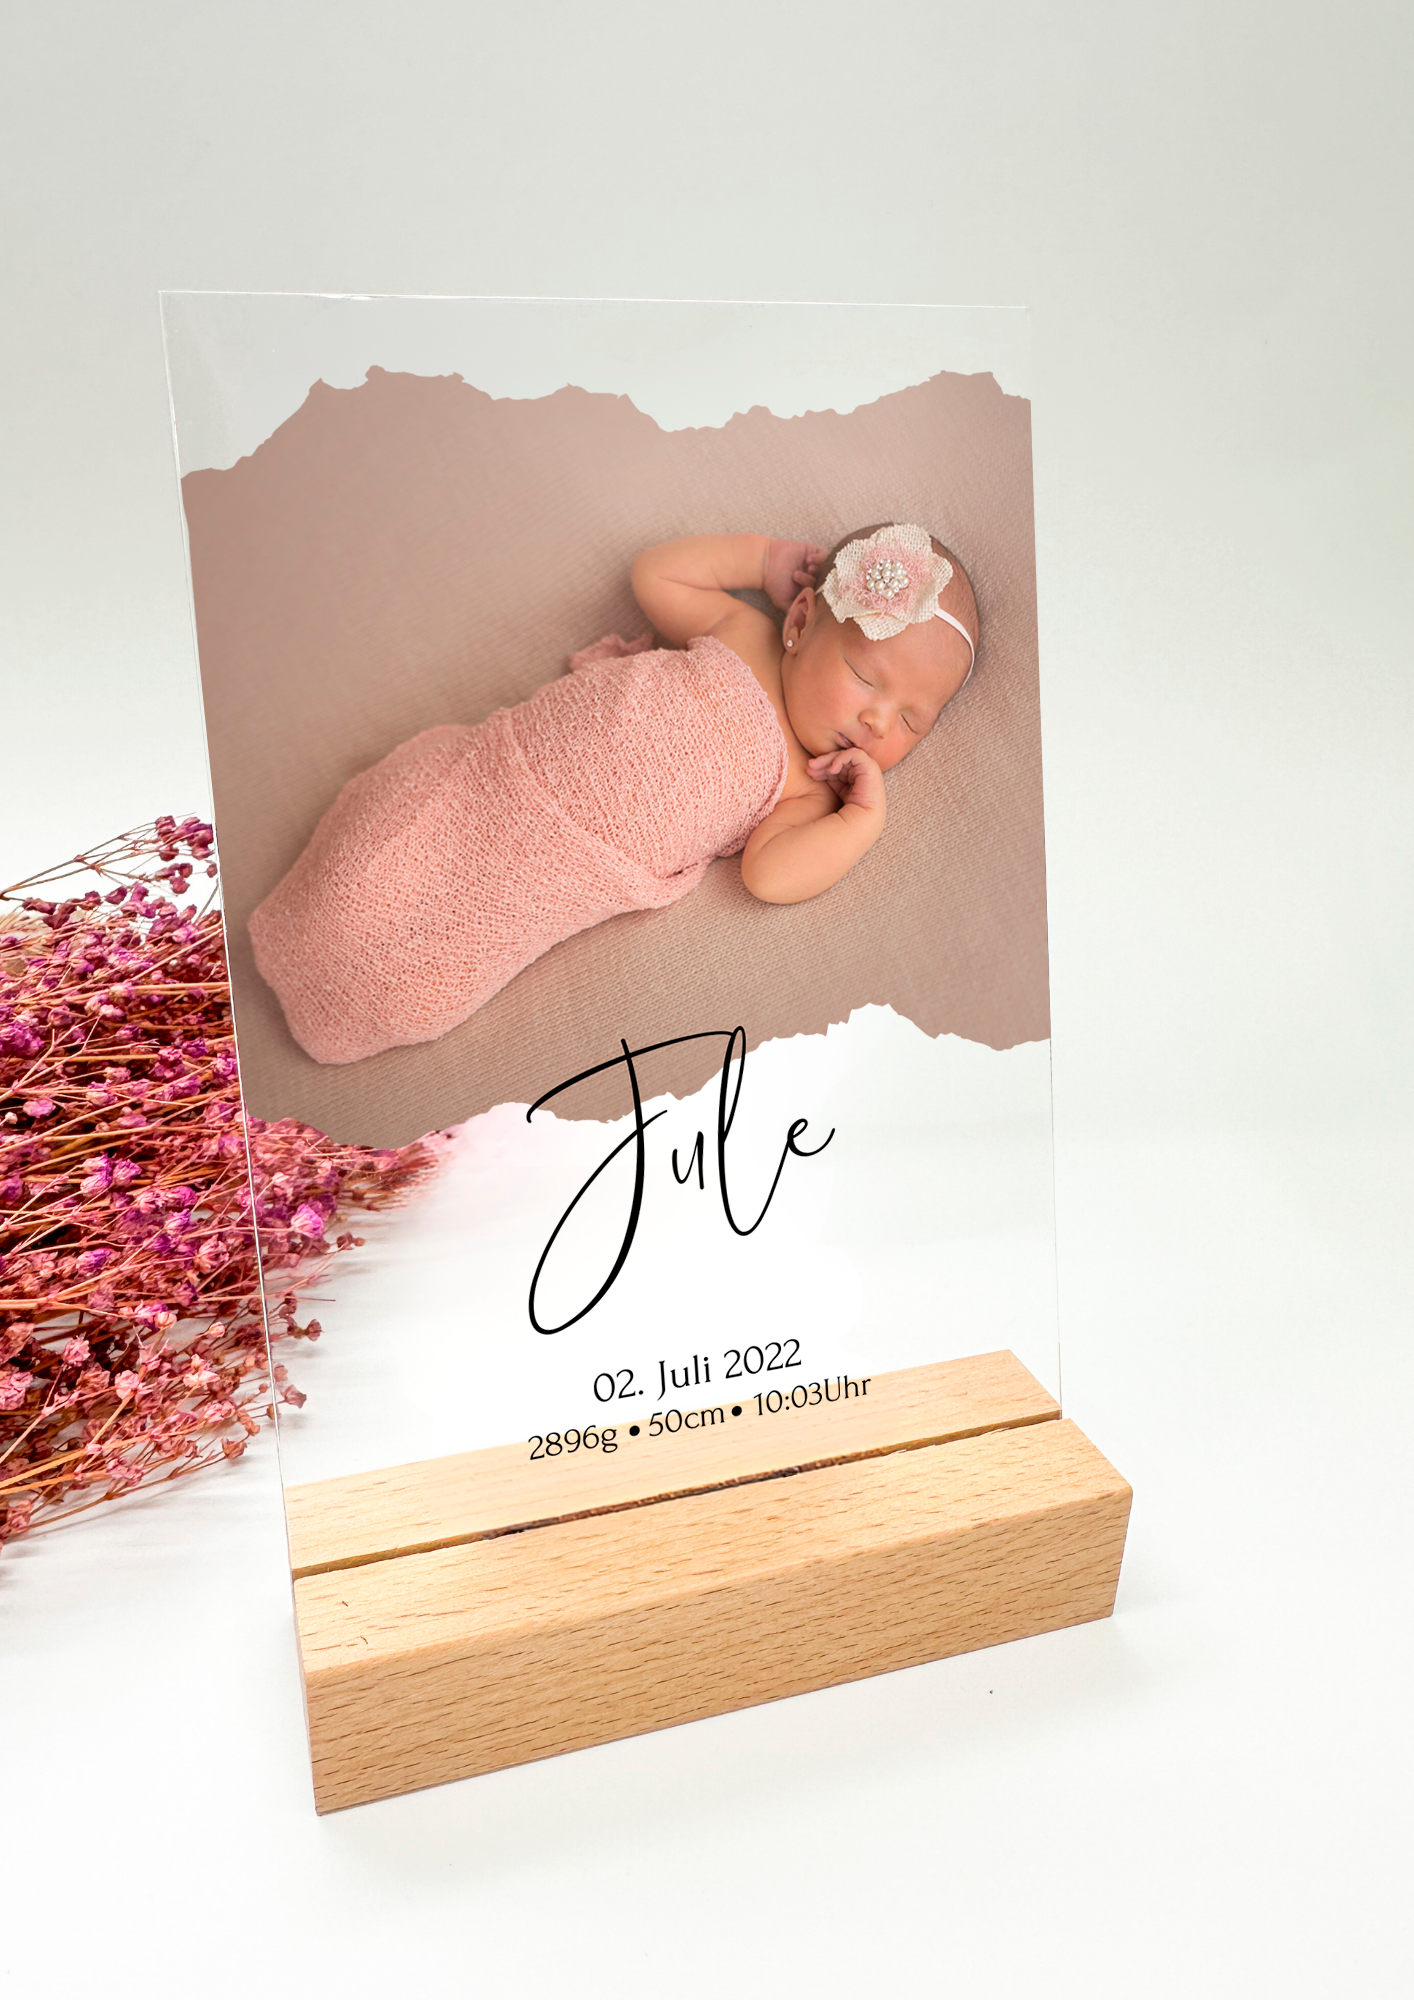 Babyfoto auf Acrylglas/Geschenk für Eltern/Geschenk zur Geburt/ Geschenk Mutter / Geschenk Vater